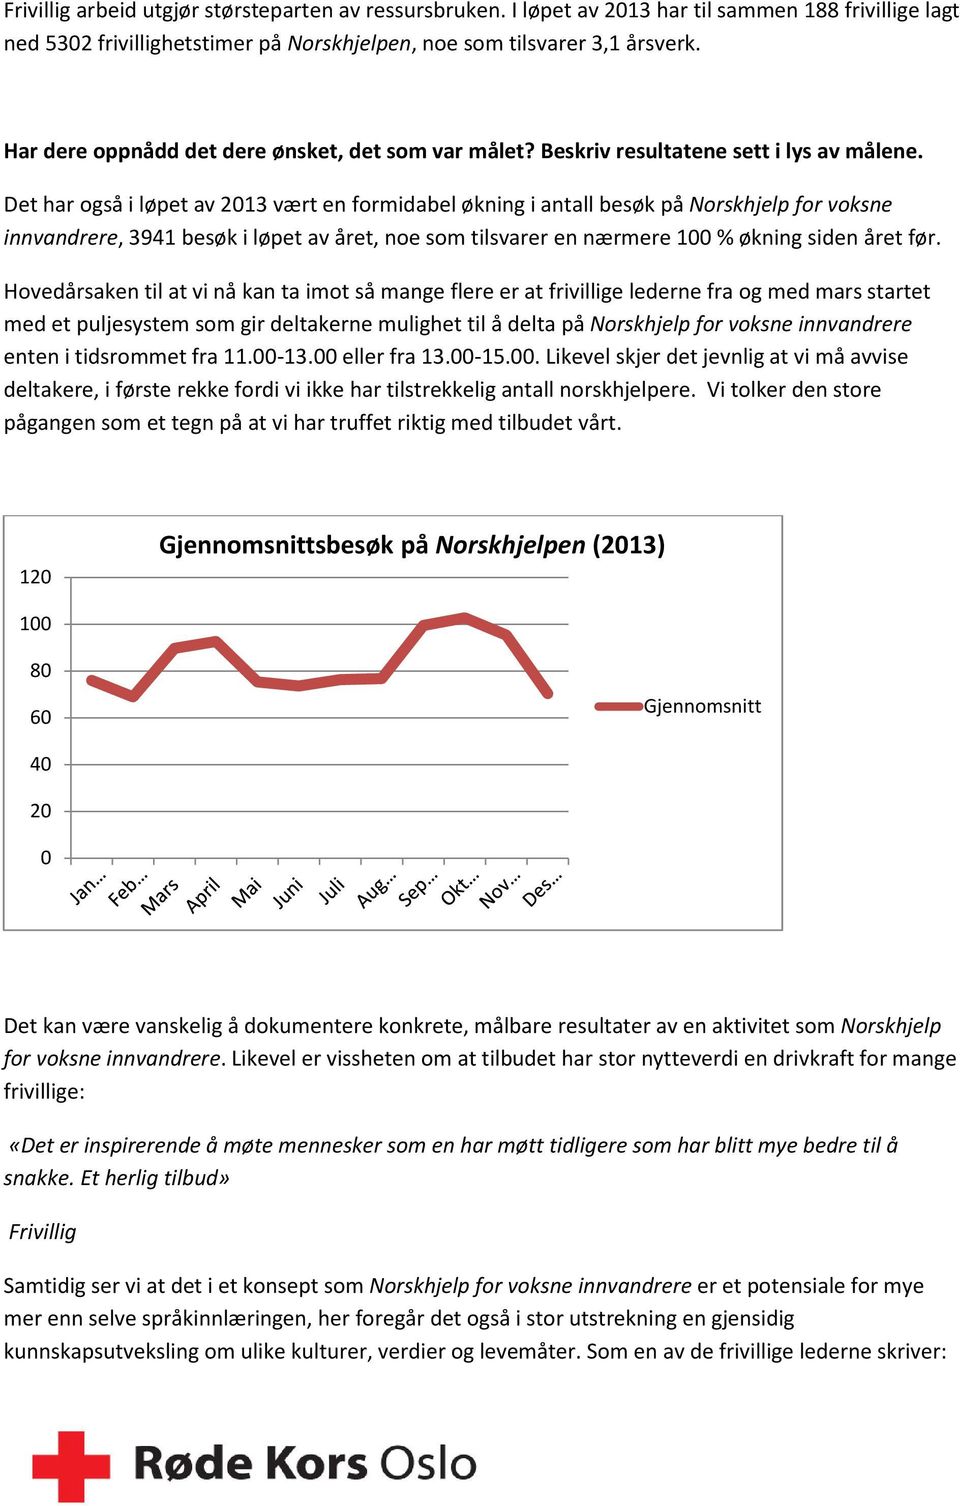 Det har også i løpet av 2013 vært en formidabel økning i antall besøk på Norskhjelp for voksne innvandrere, 3941 besøk i løpet av året, noe som tilsvarer en nærmere 100 % økning siden året før.